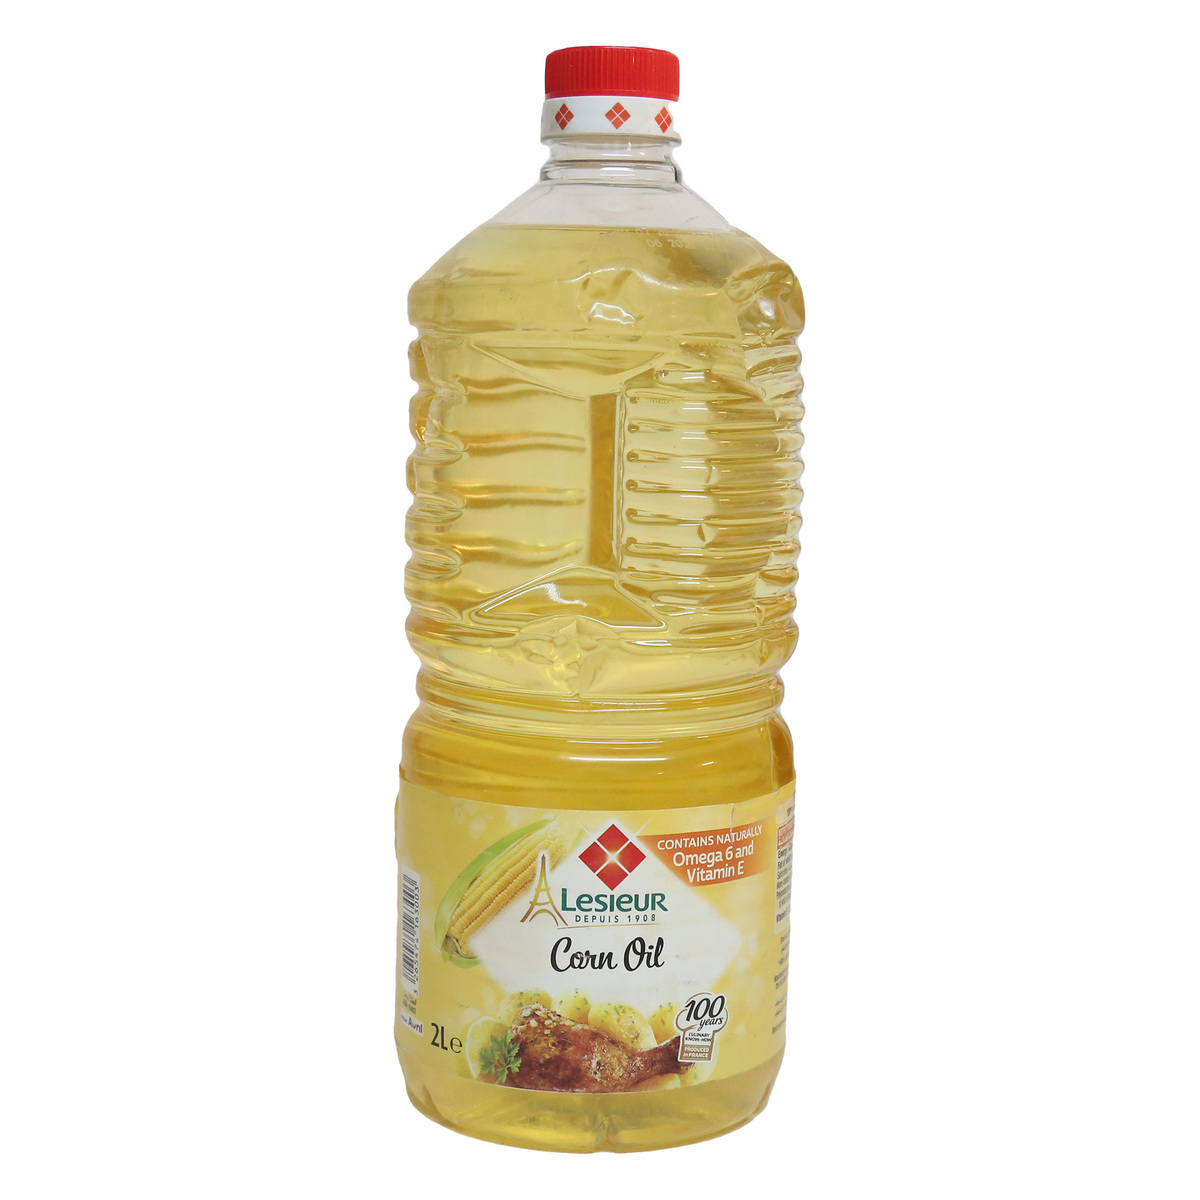 اشتري قم بشراء ليسيور زيت ذرة 2 لتر Online at Best Price من الموقع - من لولو هايبر ماركت Corn Oil في مصر